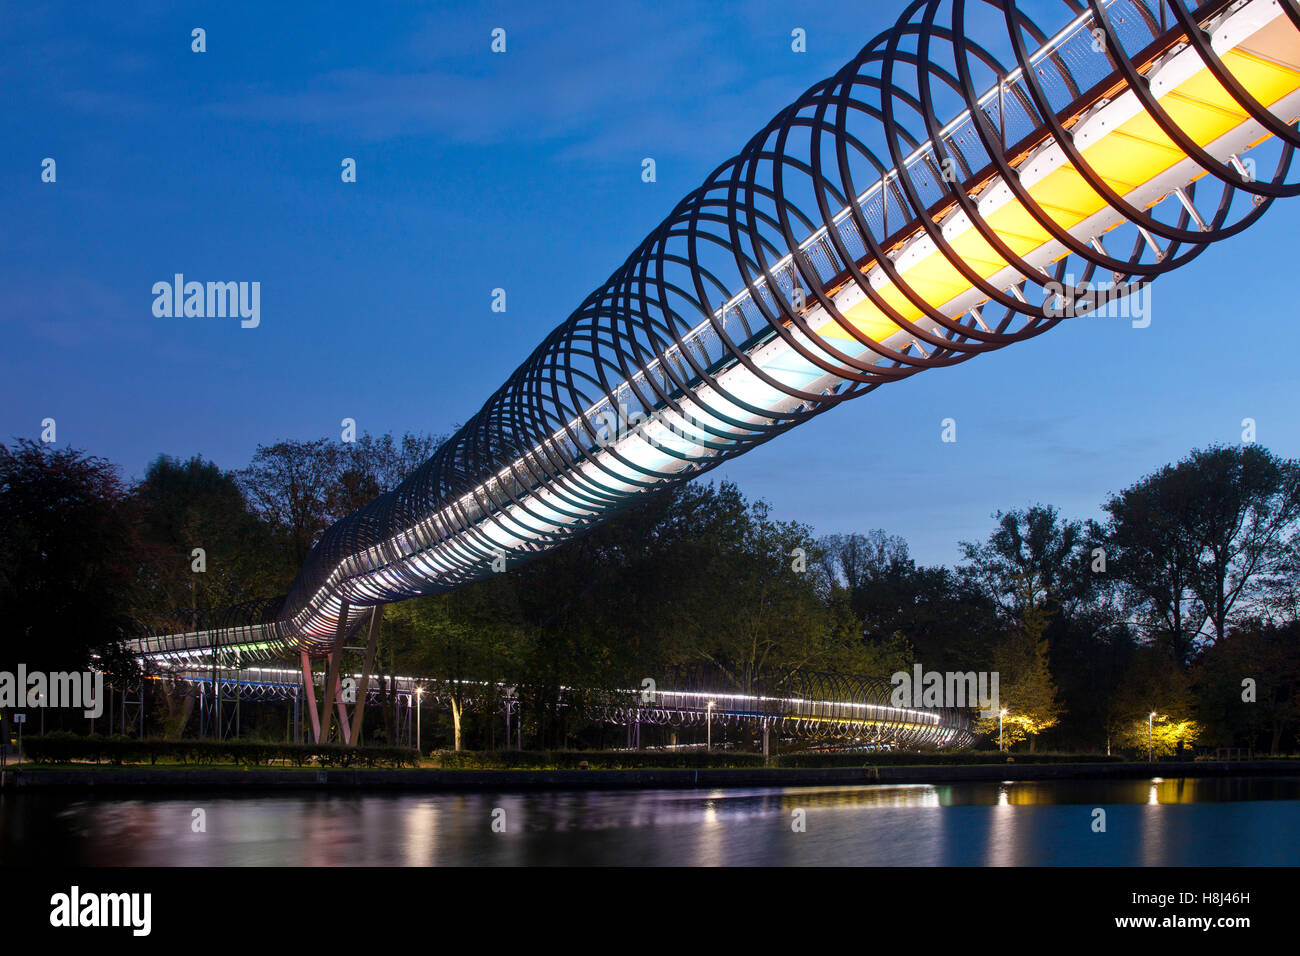 Alemania, Oberhausen, iluminado Puente peatonal Slinky salta a la fama, también llamado puente a través del canal Rhein-Herne Rehberger Foto de stock